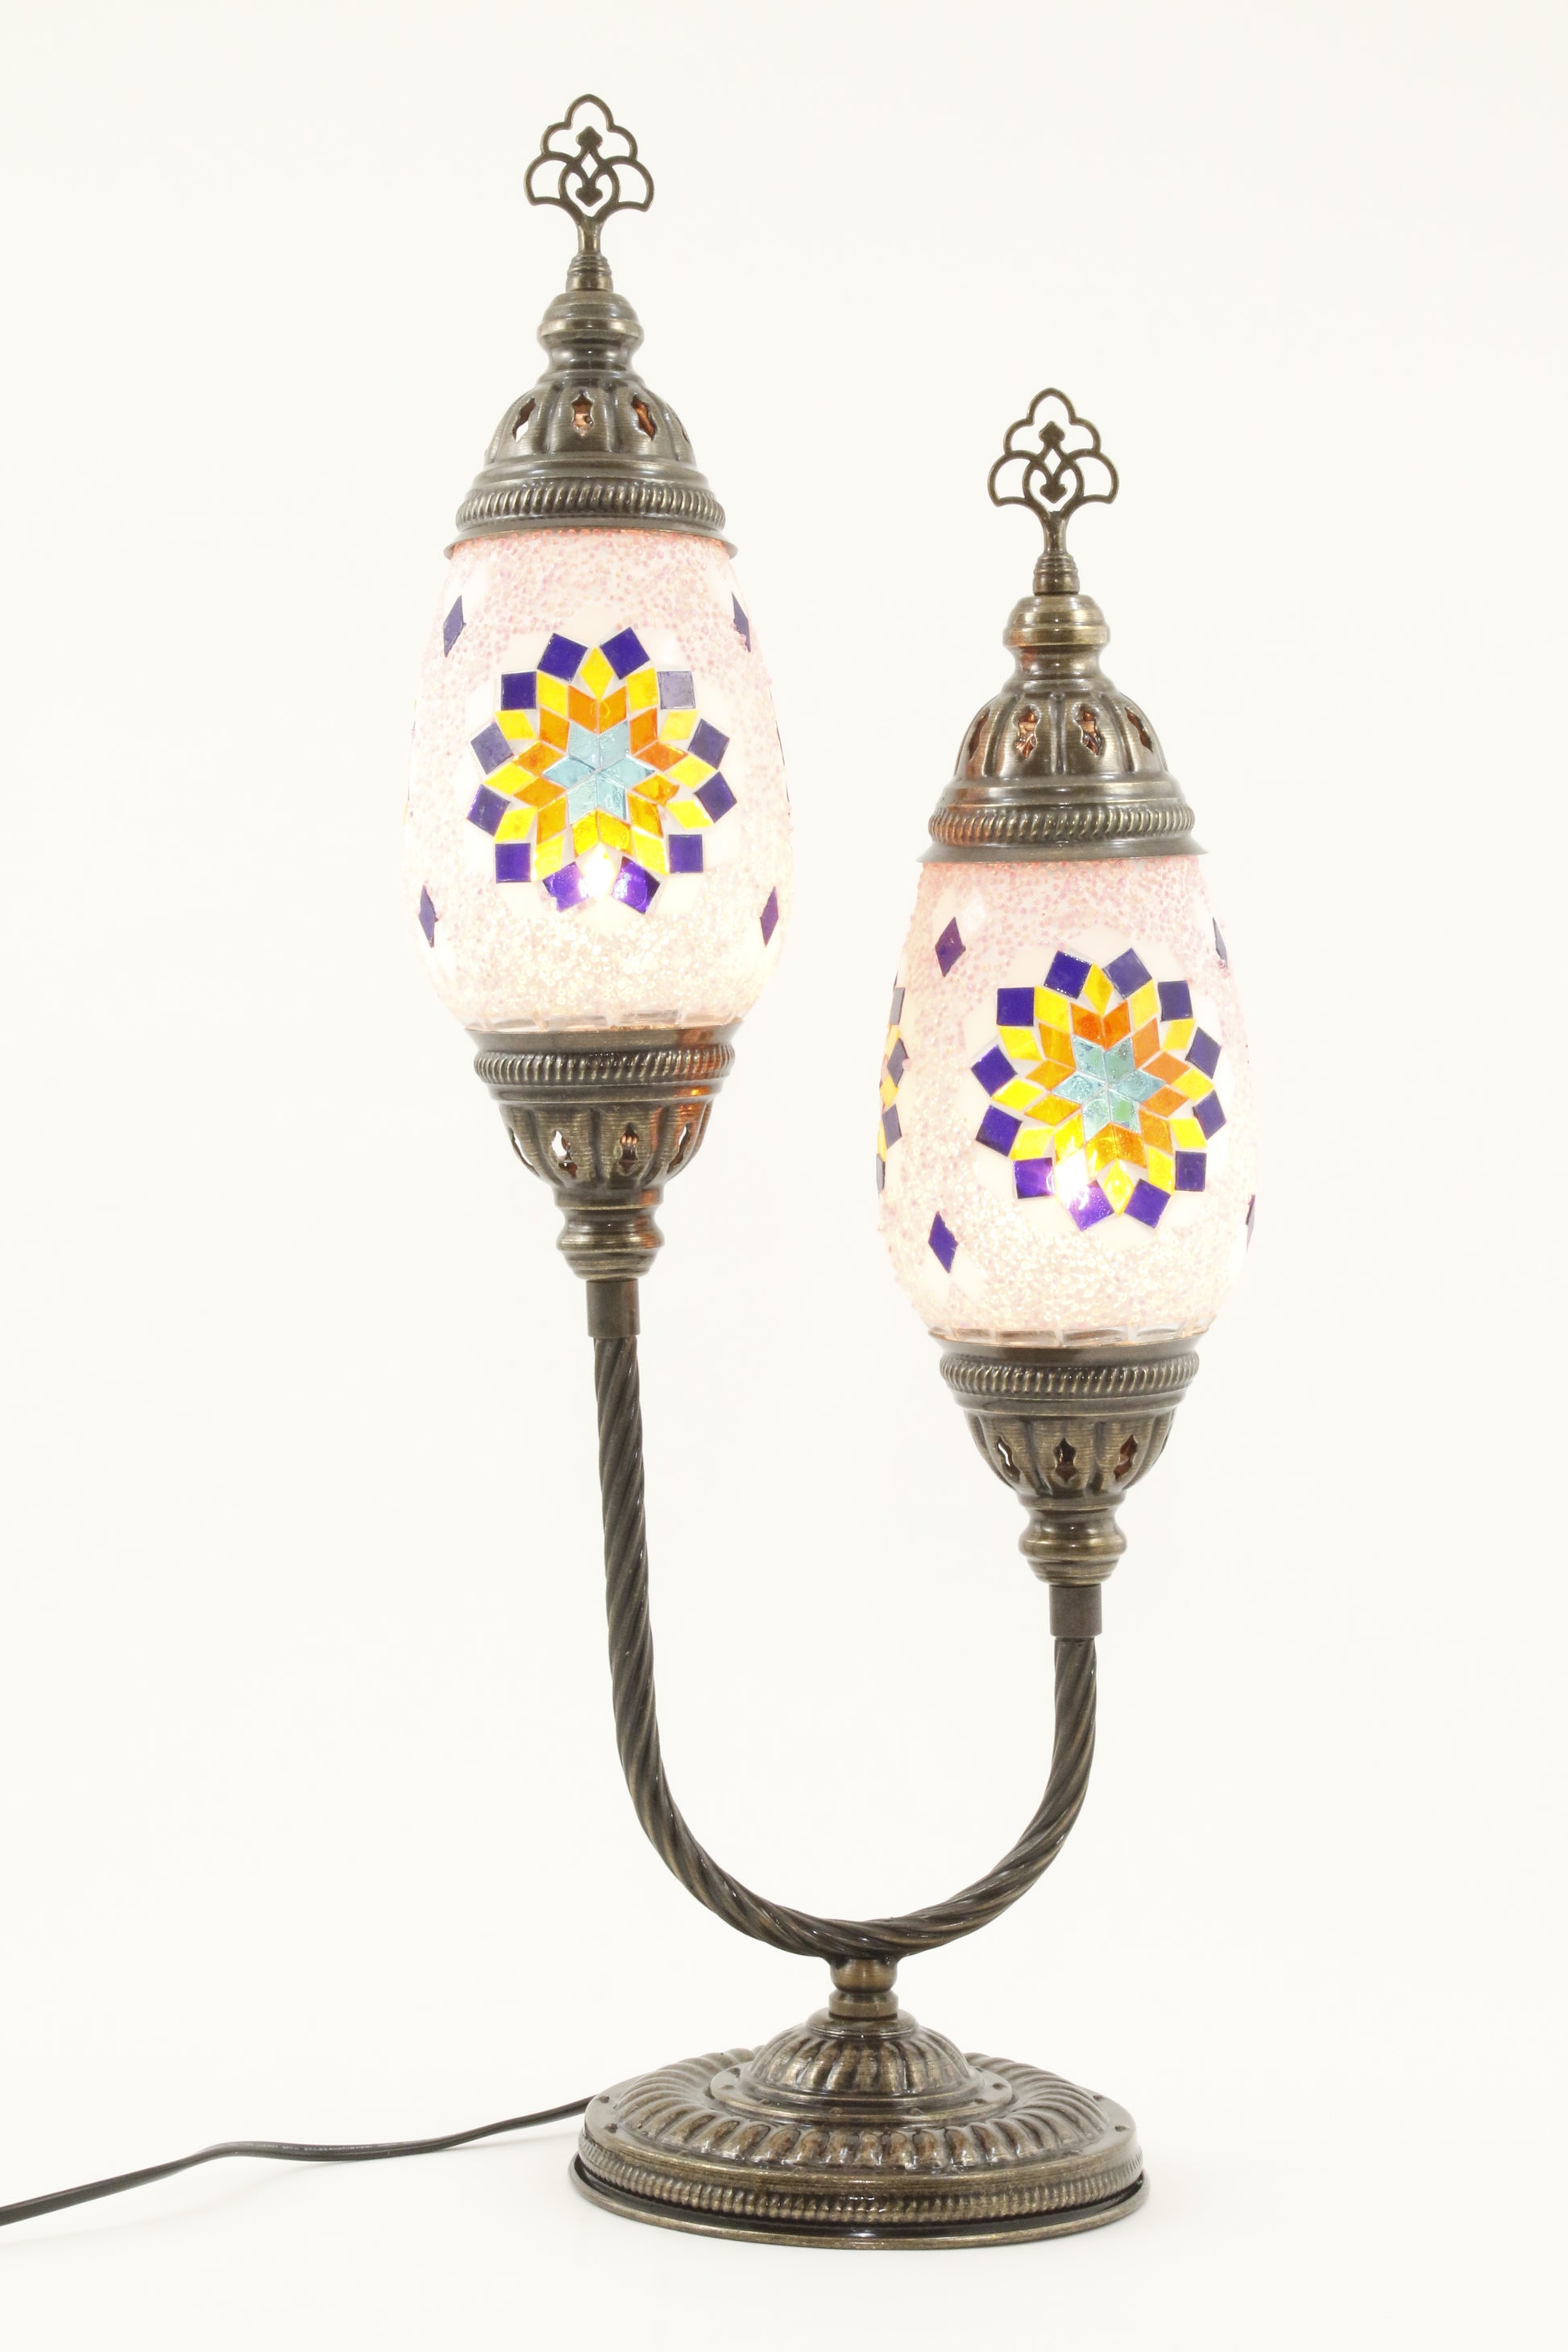 DOUBLE HORSESHOE EGG SHAPED TURKISH MOSAIC TABLE LAMP RAINBOW -TURNED ON